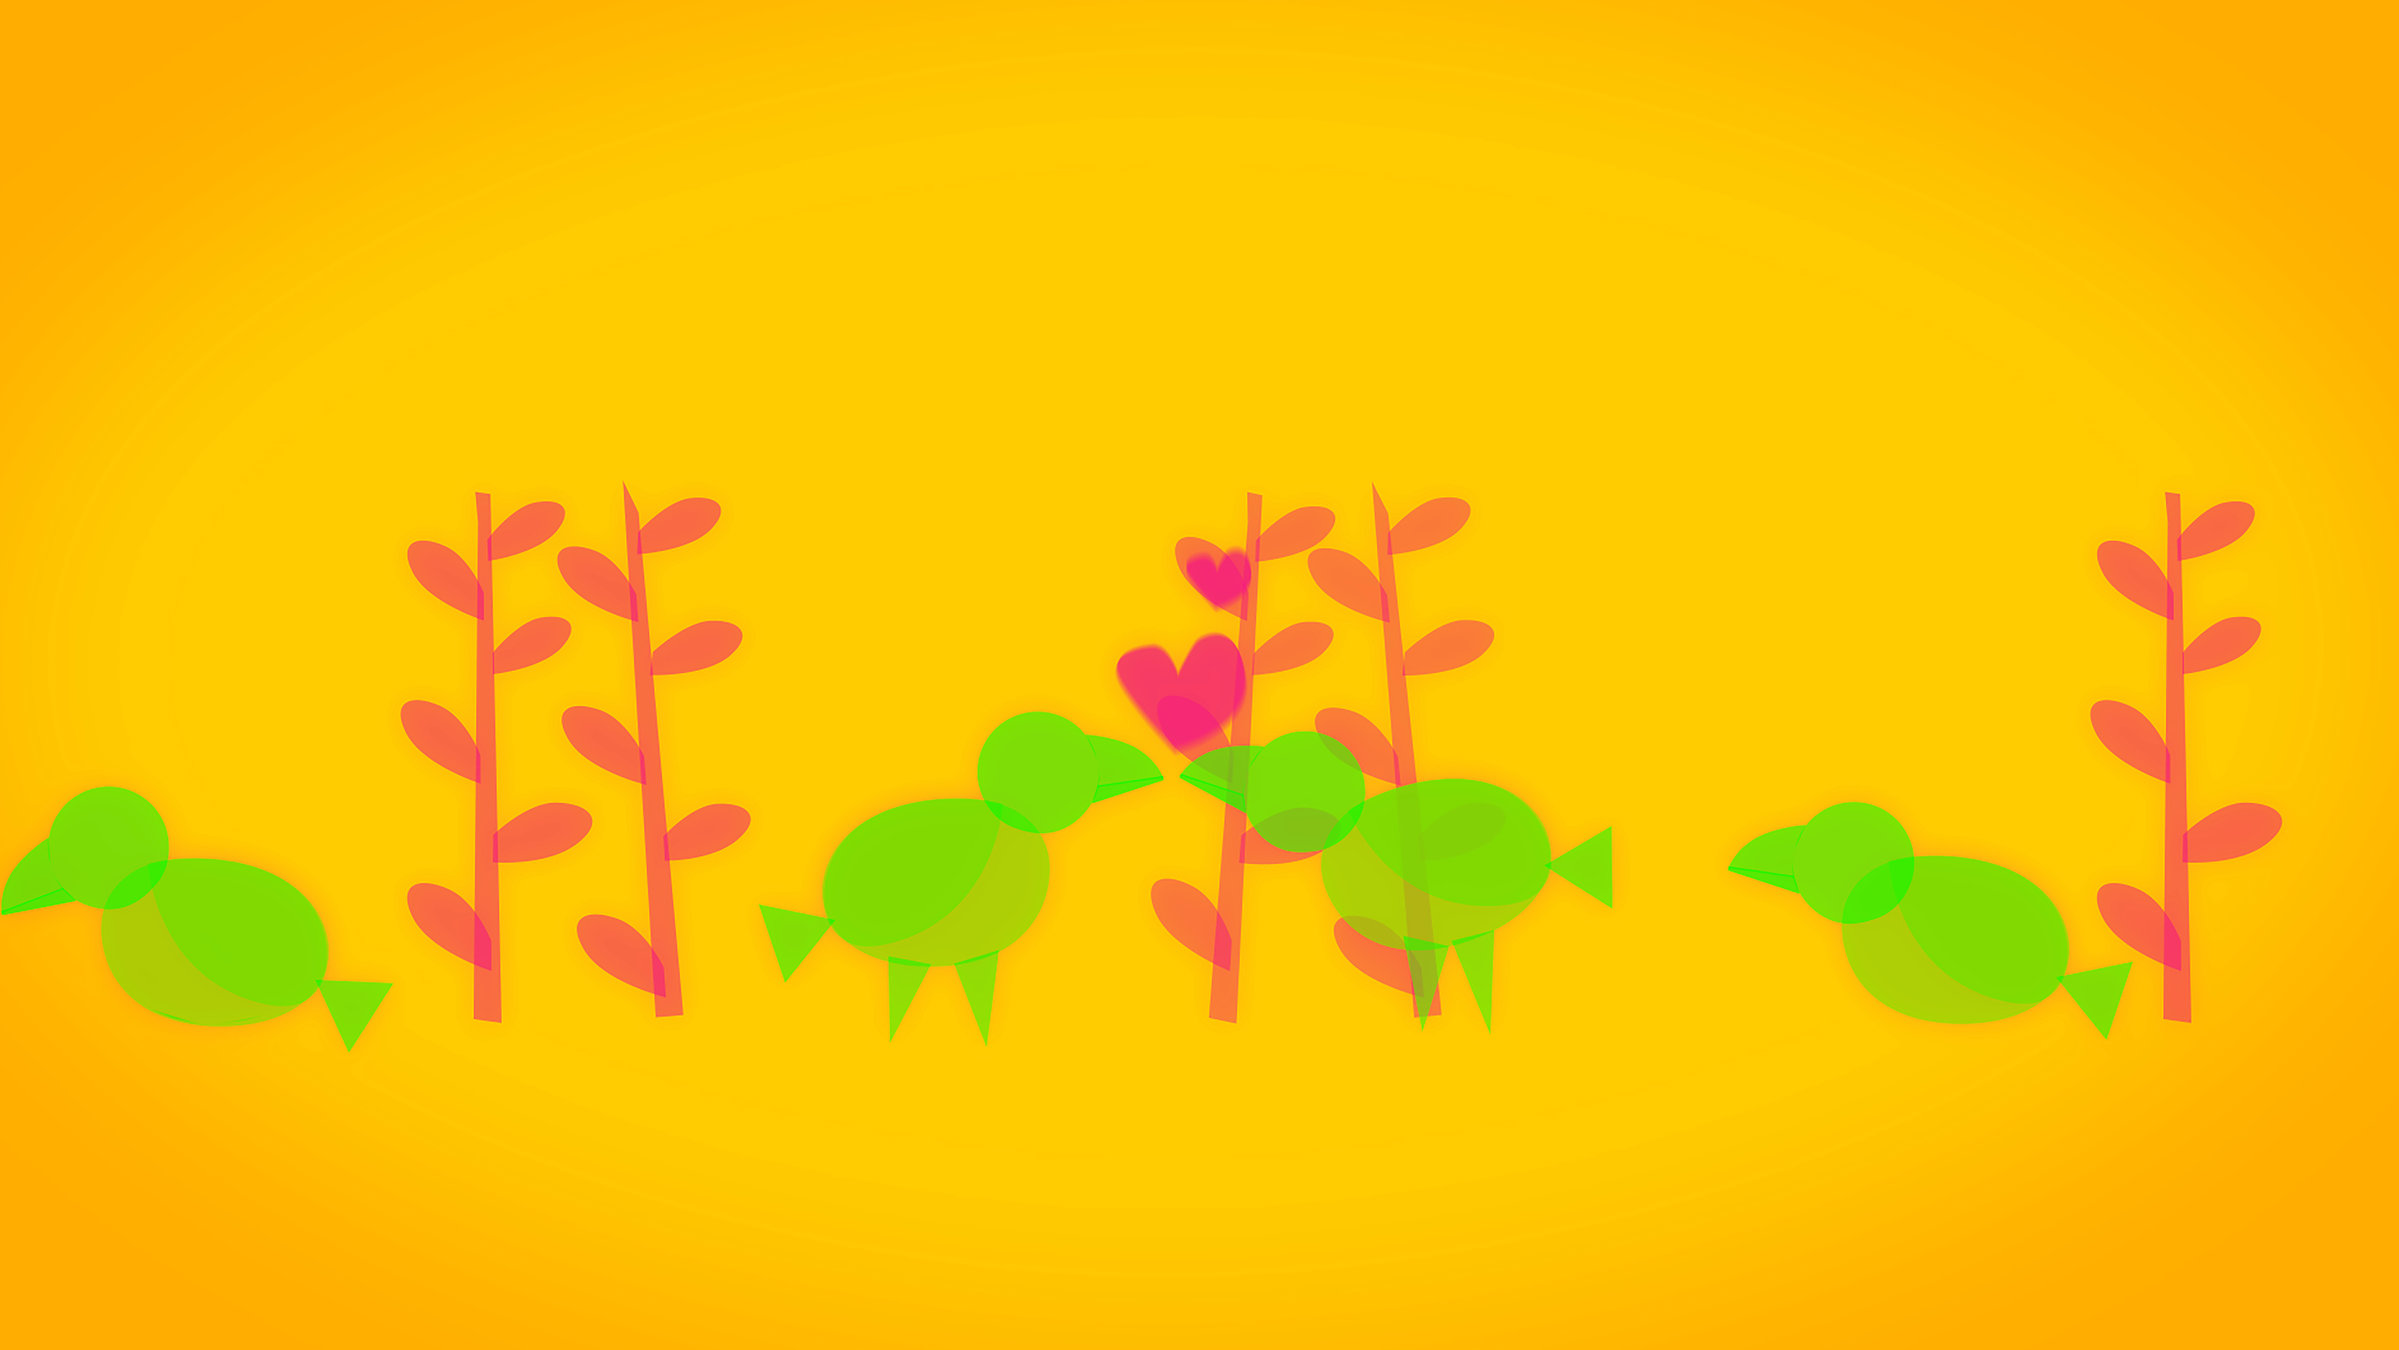 "Die glorreichen 10 - Die seltsamsten Spiele der Geschichte": Animationsgrafik: In kleinen Gebüschen hocken grüne Kakapos. In der Mitte stehen sich zwei gegenüber und Herzen steigen auf.